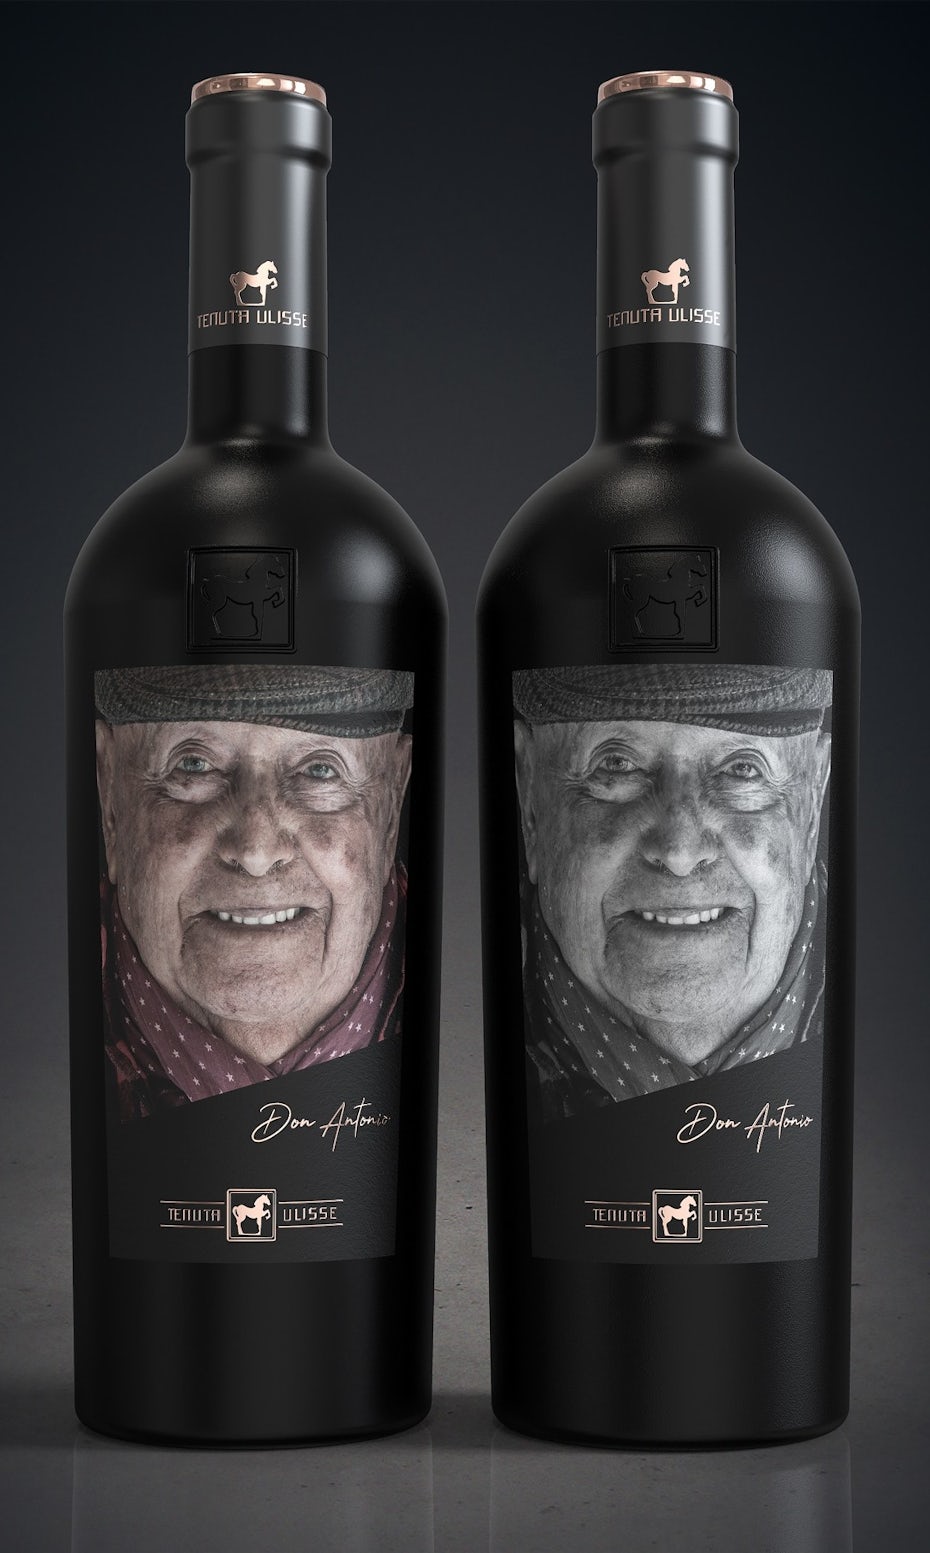 Diseño de etiqueta de vino con retrato fotográfico.